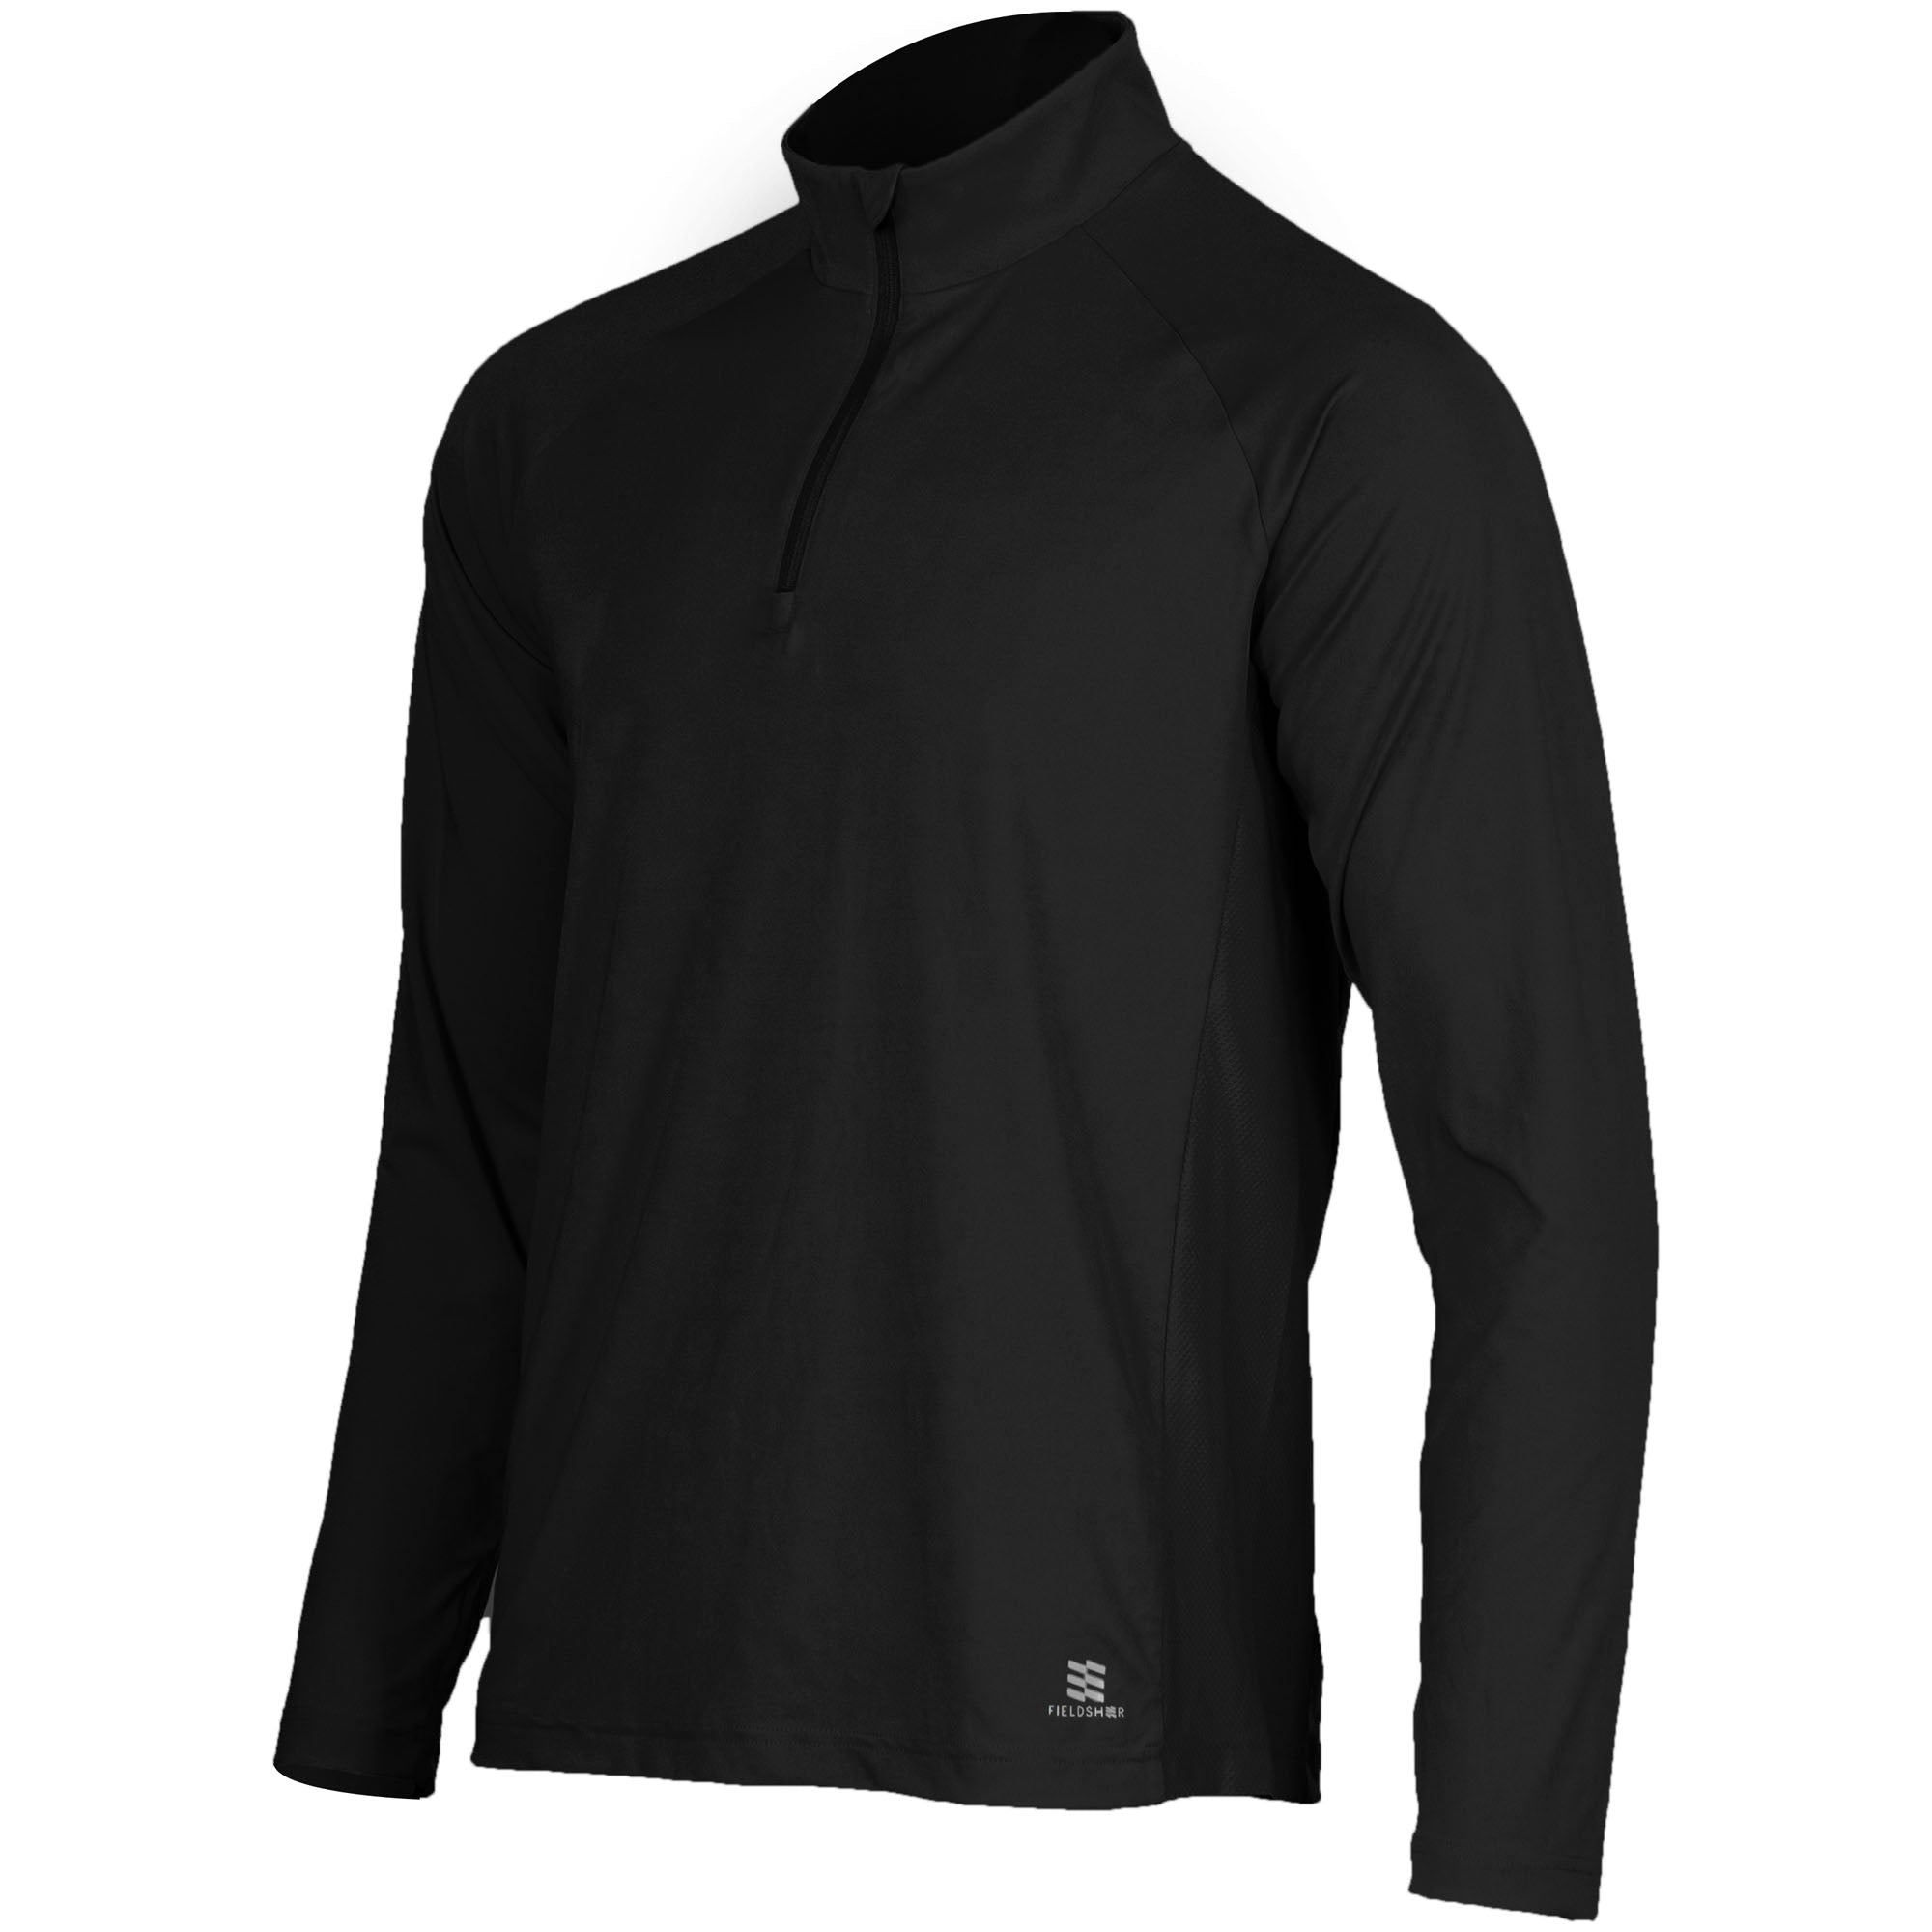 Men's Mobile Cooling 1/4 Zip Long Sleeve Shirt, Fieldsheer